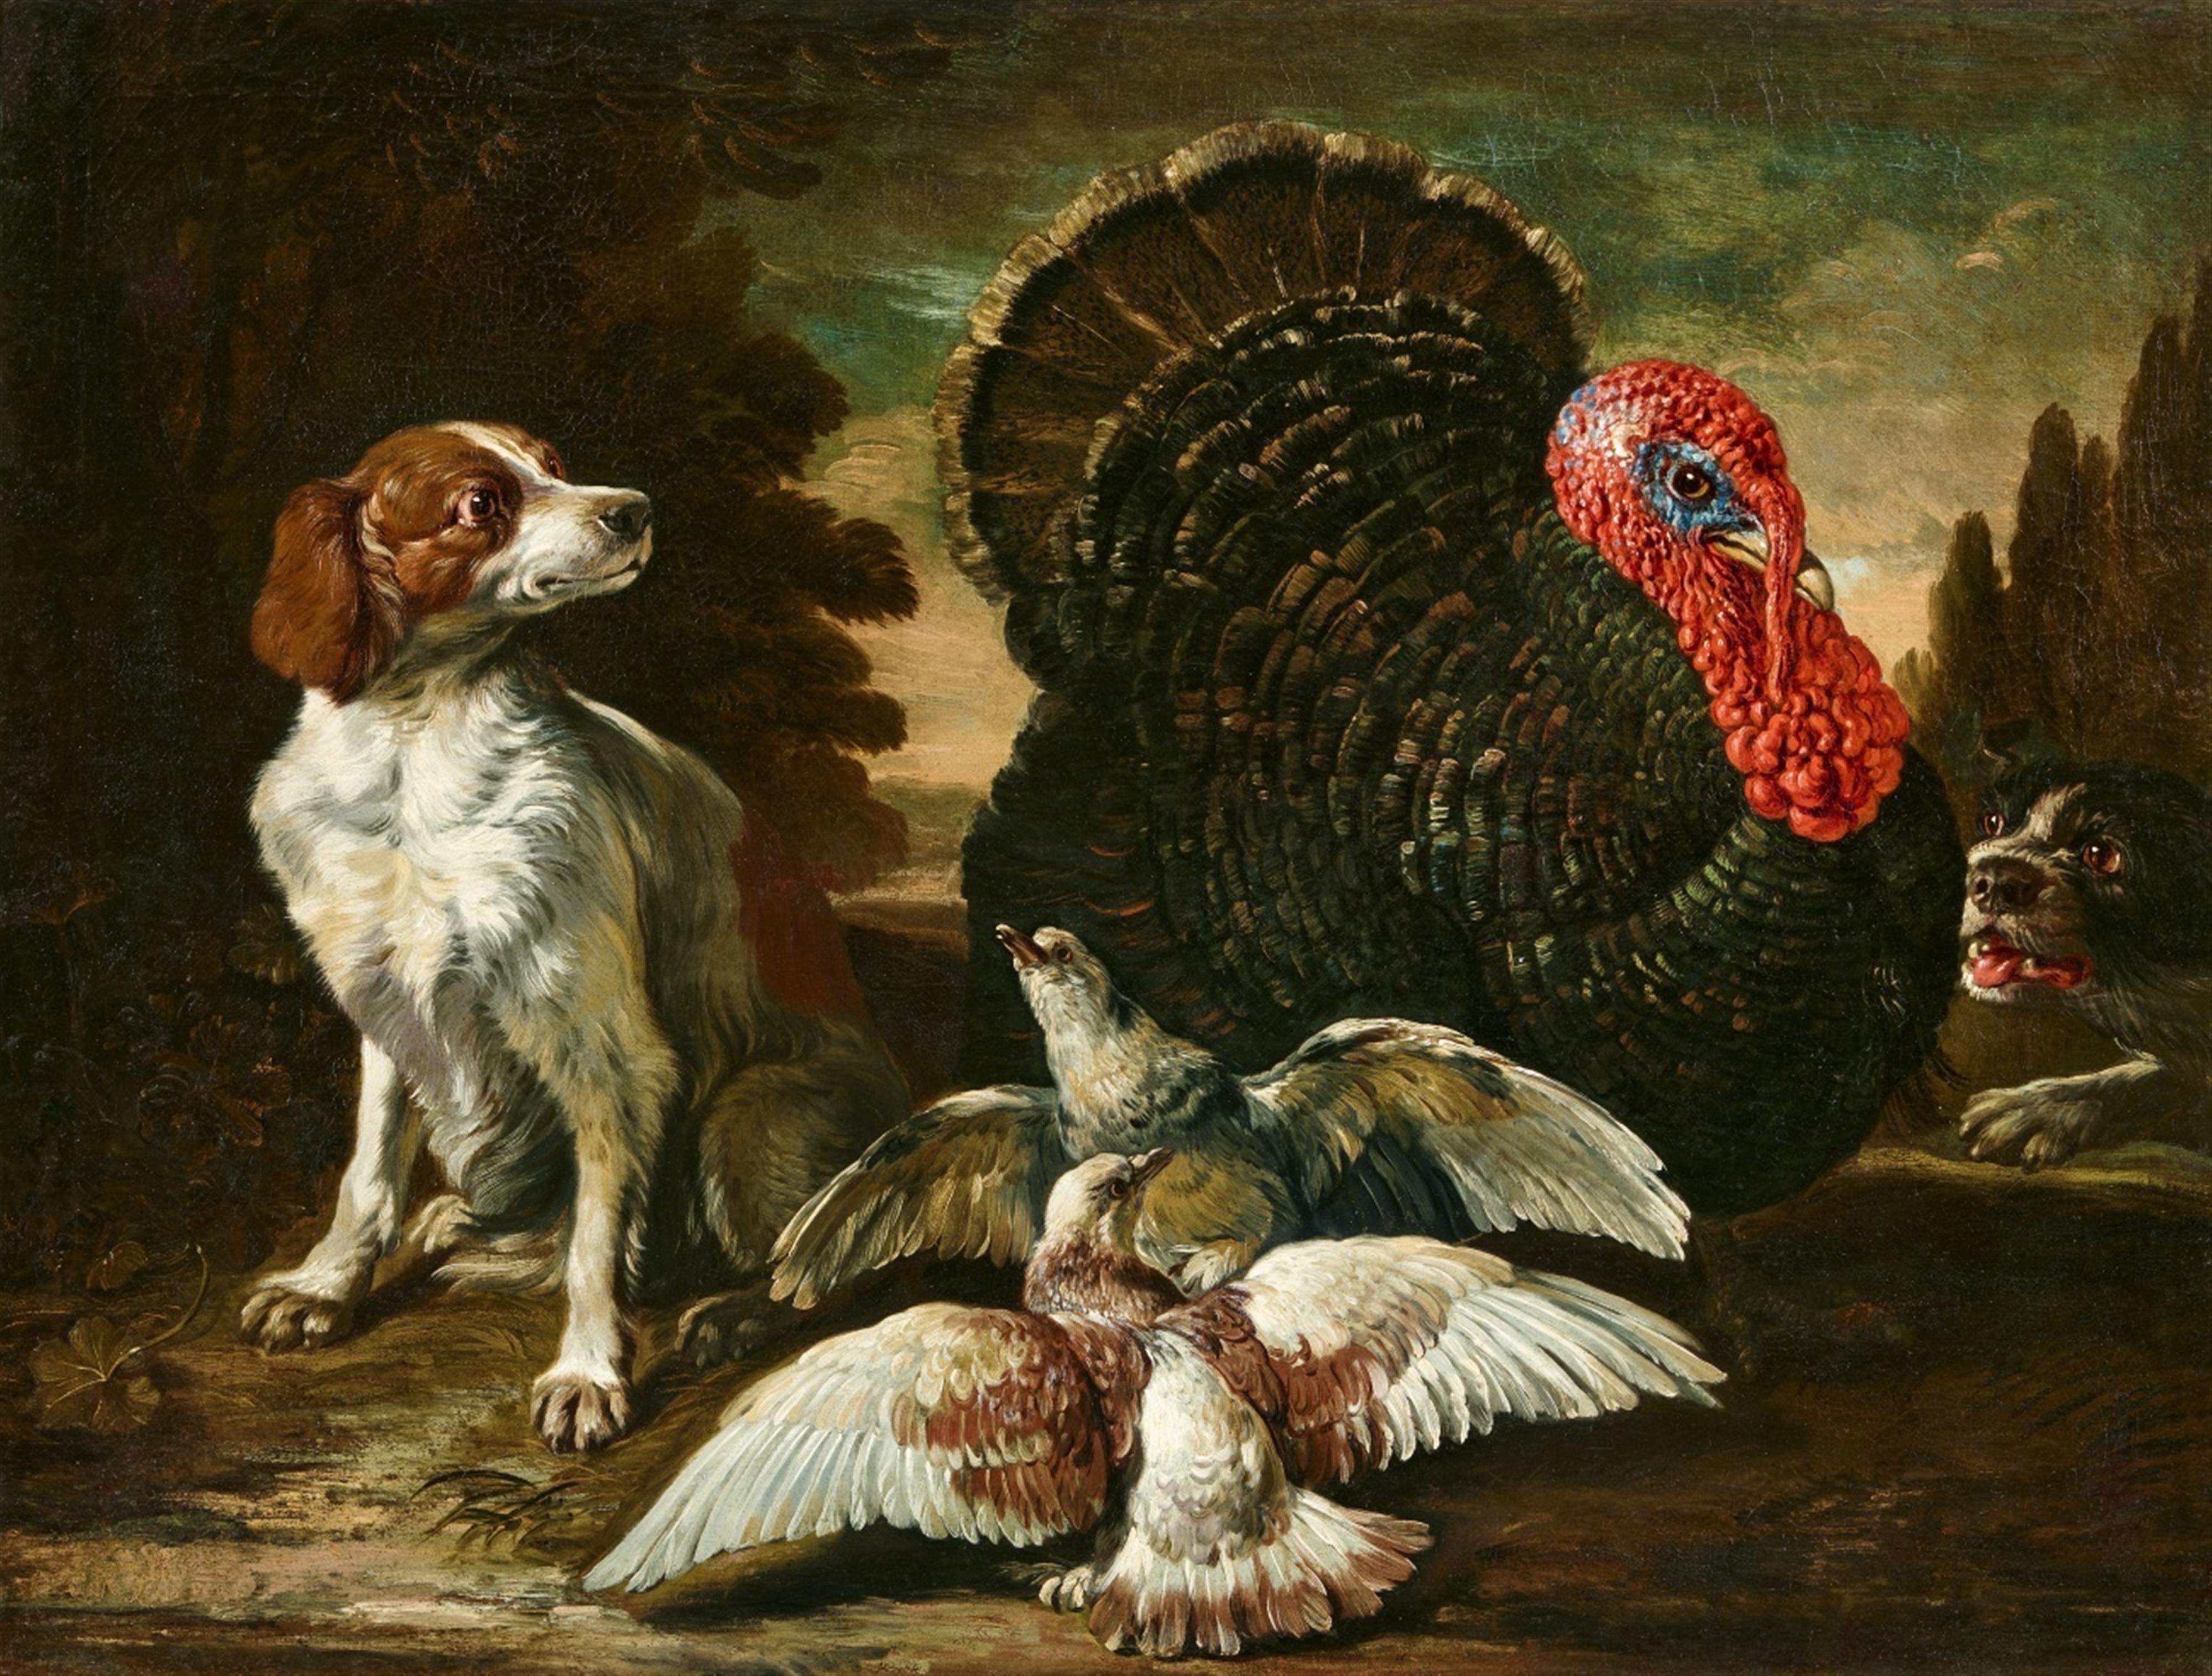 David de Coninck - Ein Truthahn, zwei Hunde und zwei Tauben vor einer Landschaft
Ein Pfau, zwei Hühner und zwei Kaninchen vor einer Landschaft